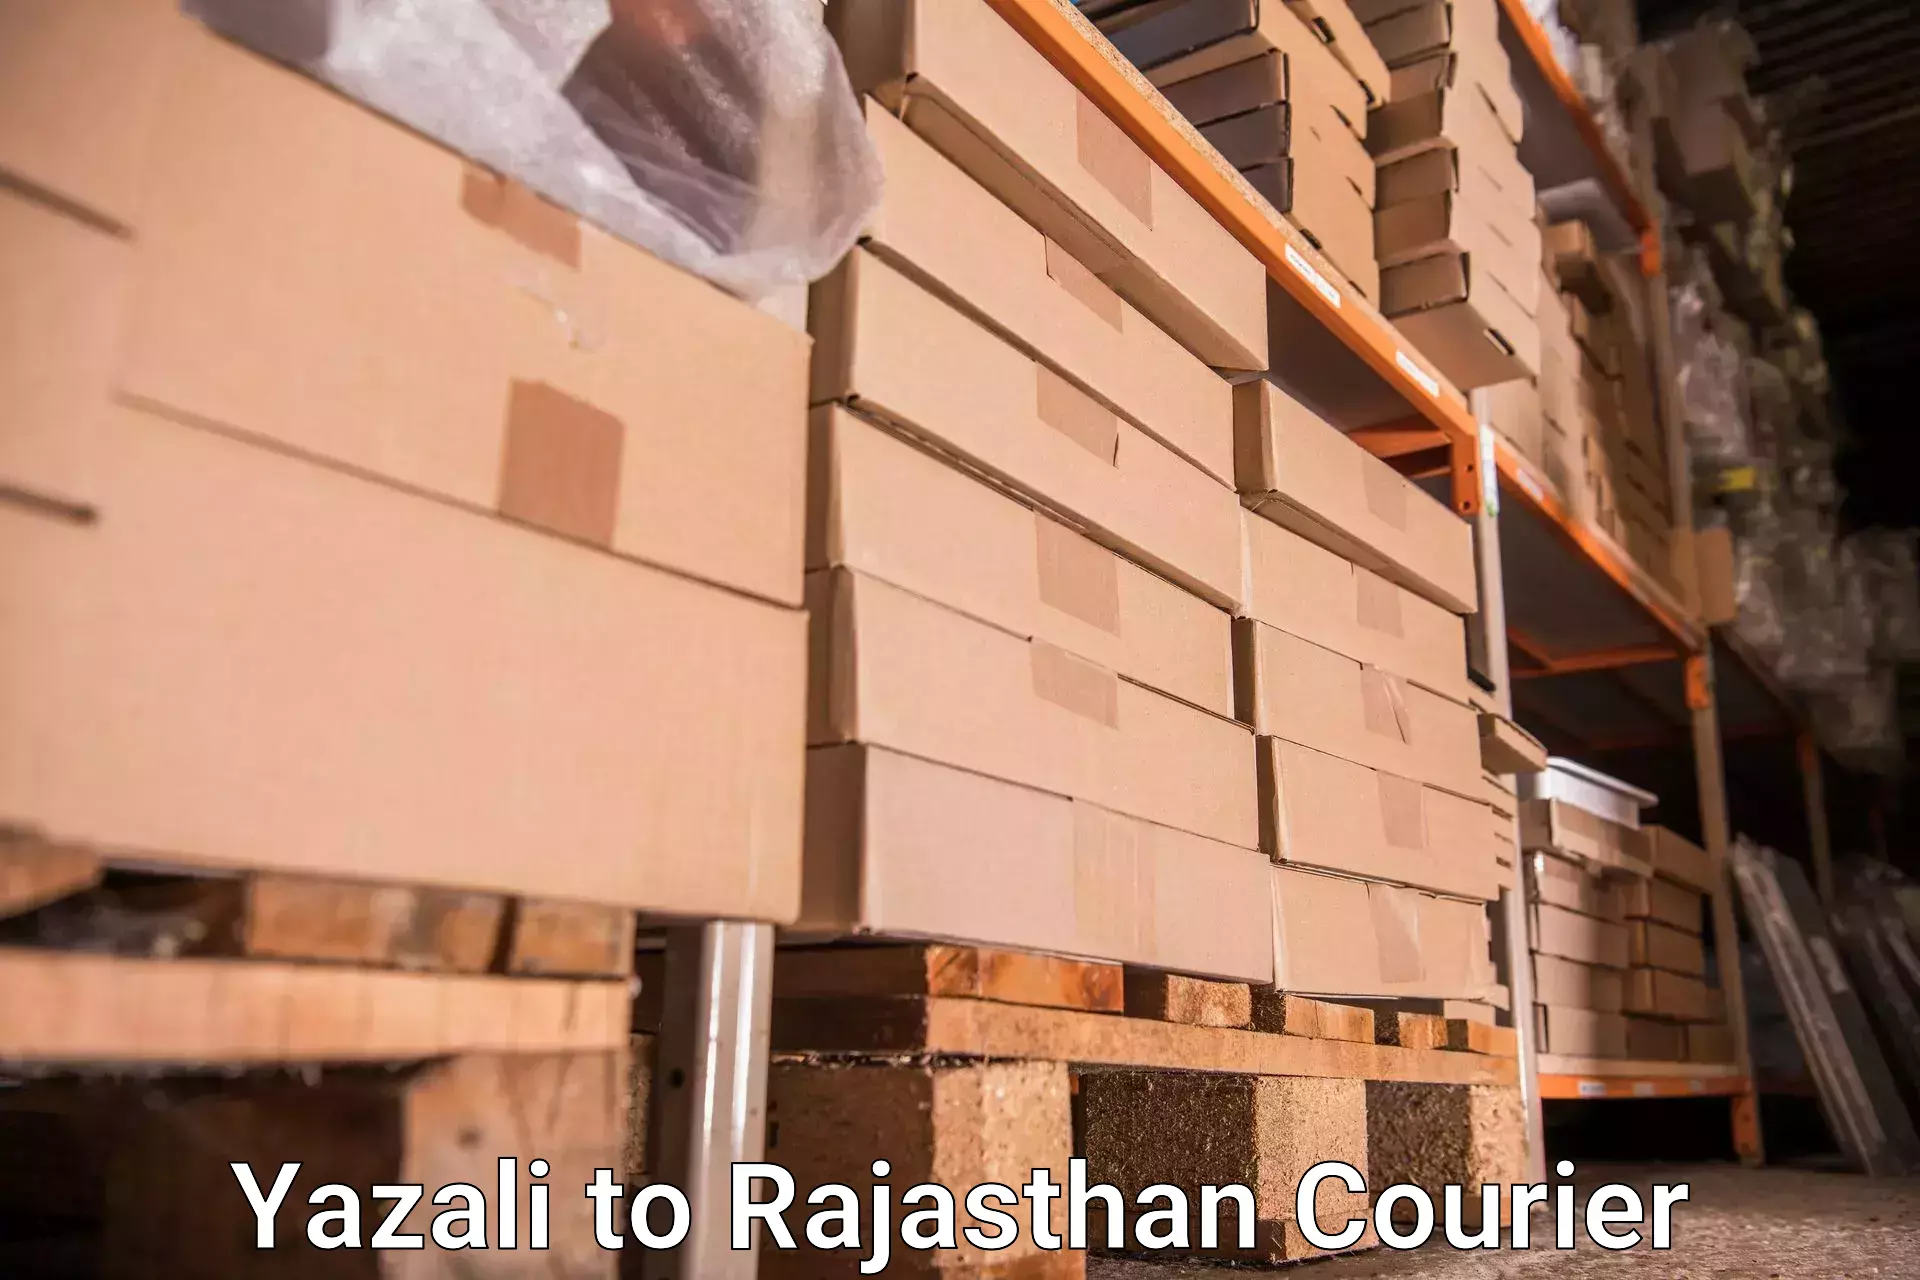 Baggage shipping service Yazali to Dudu